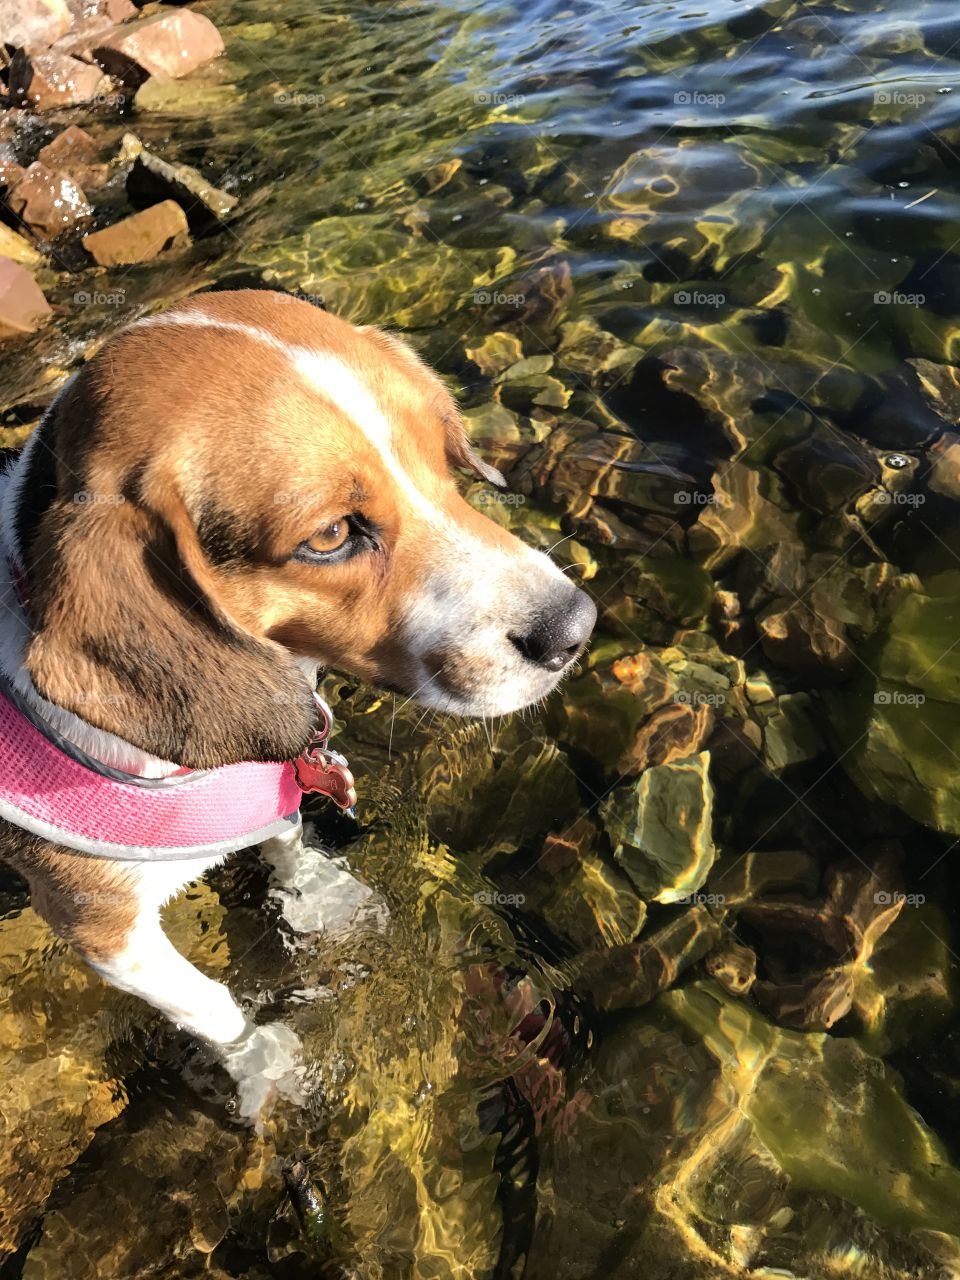 Lola at the lake 